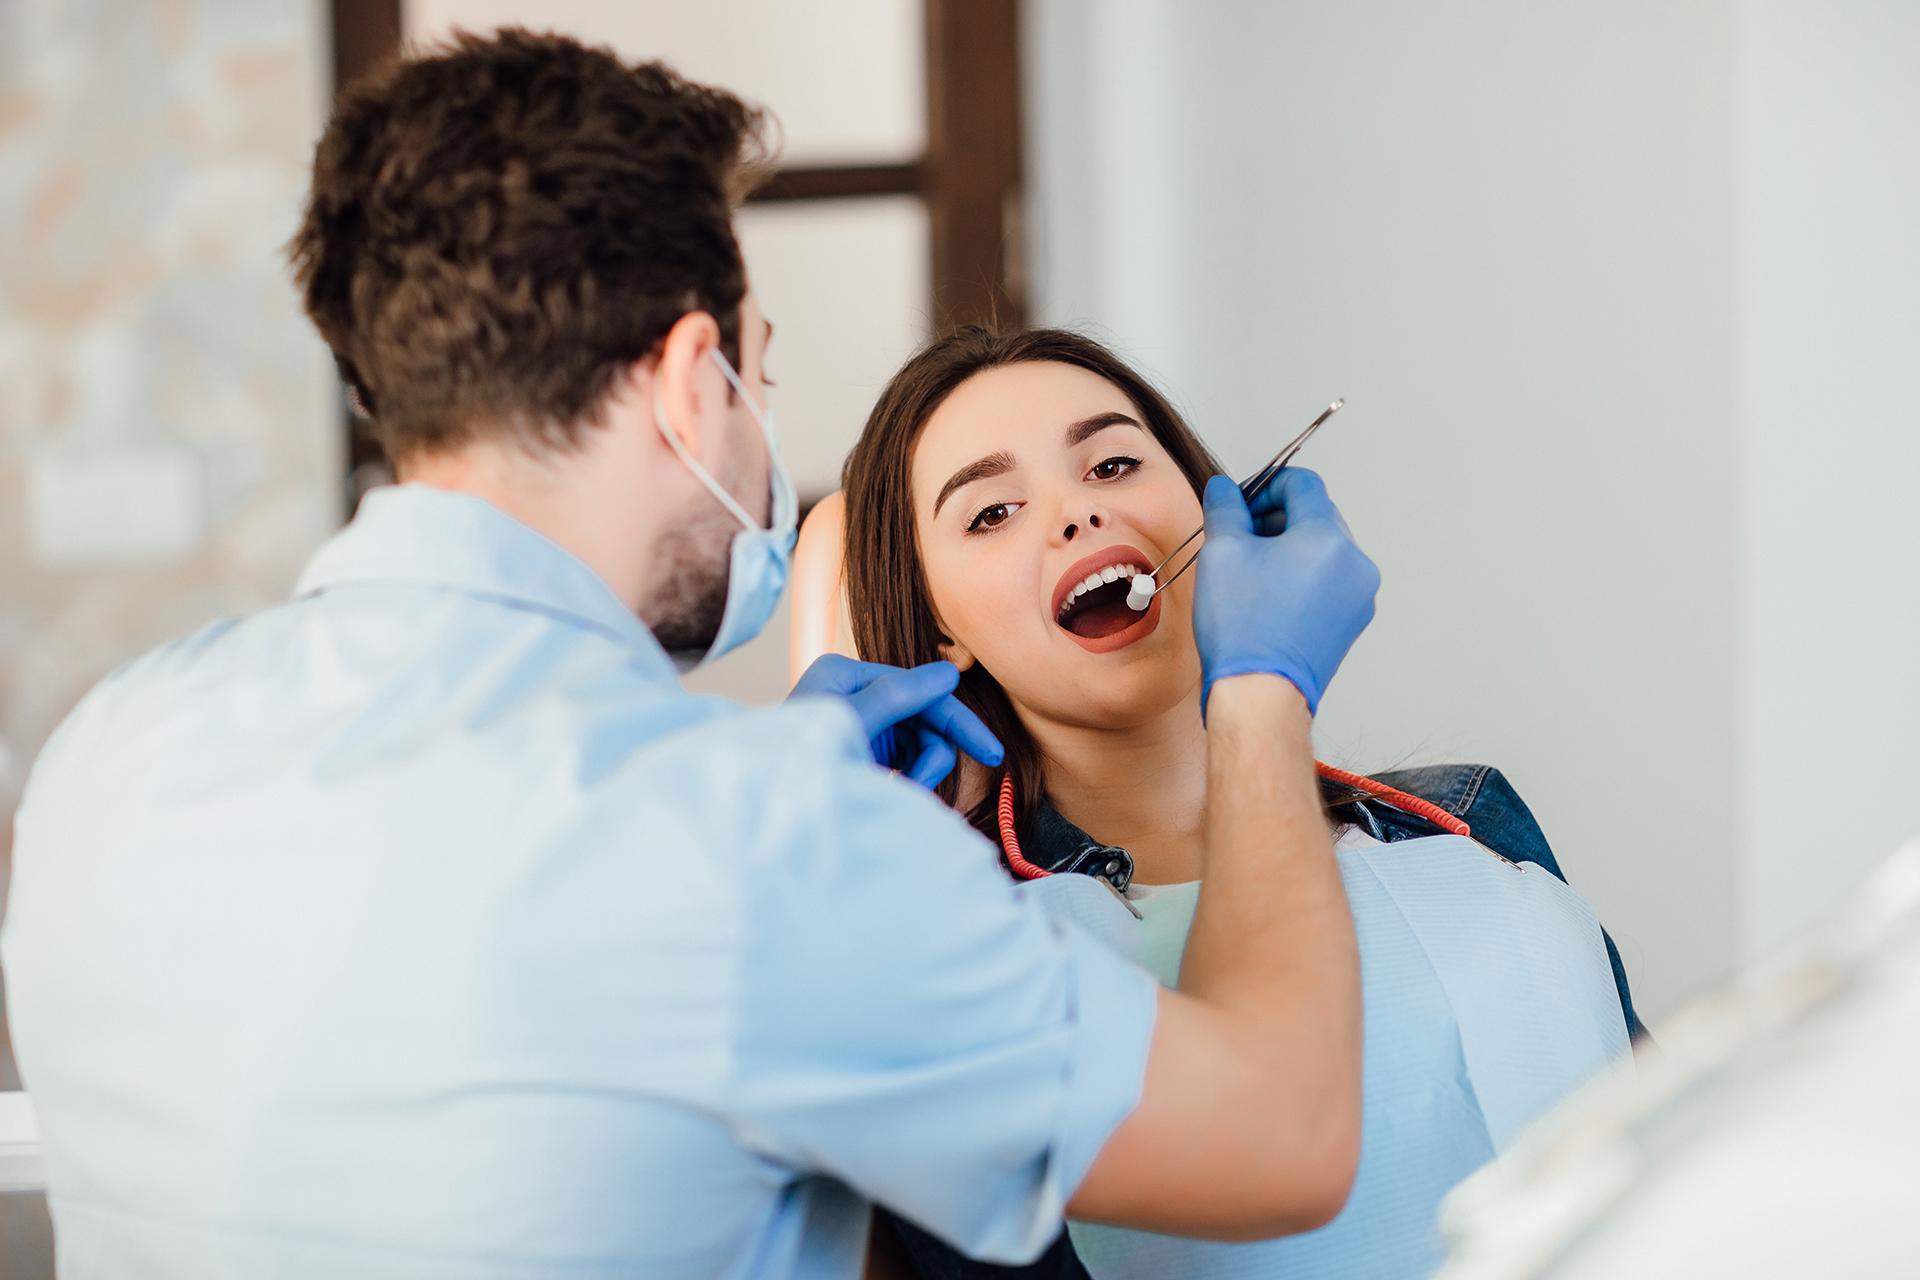 दंत स्वास्थ्य बीमा: क्या इसमें निवेश करना उचित है?